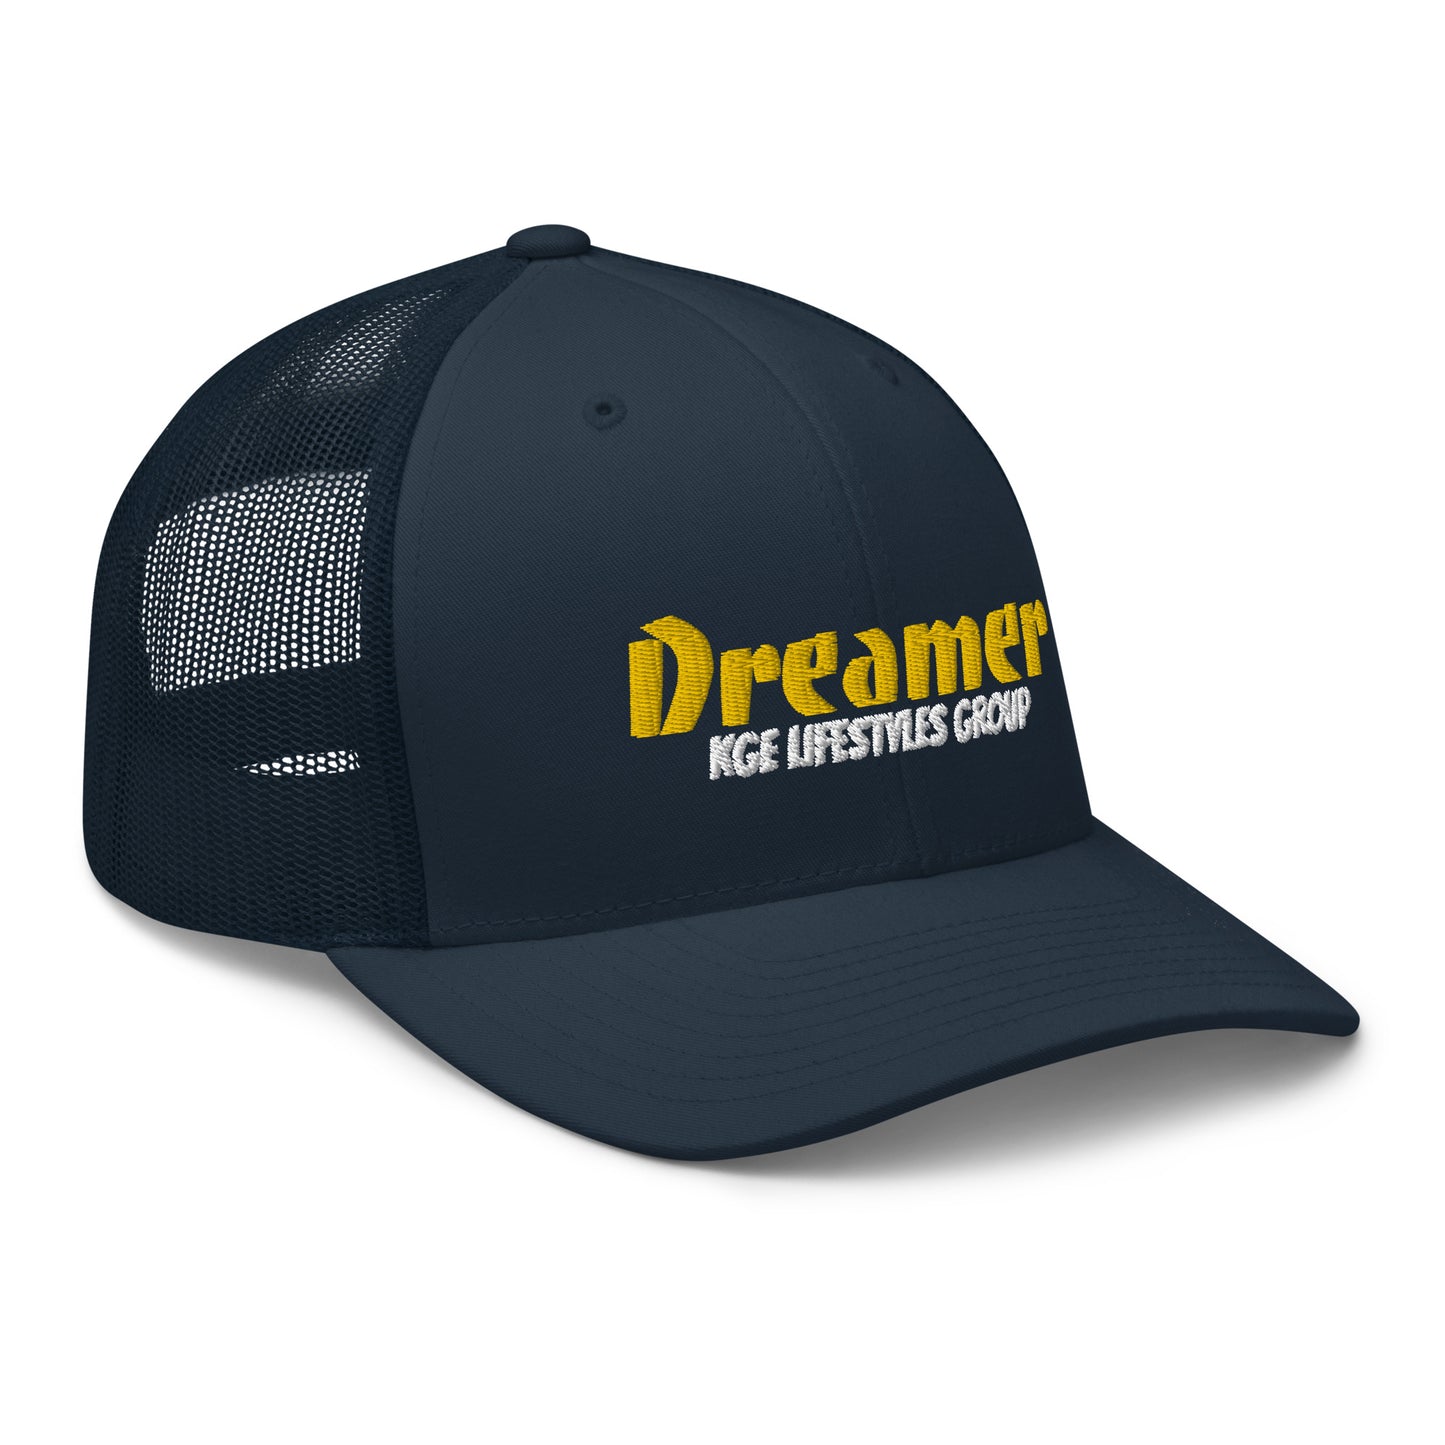 Gold Dreamer - Low Profile Trucker Cap